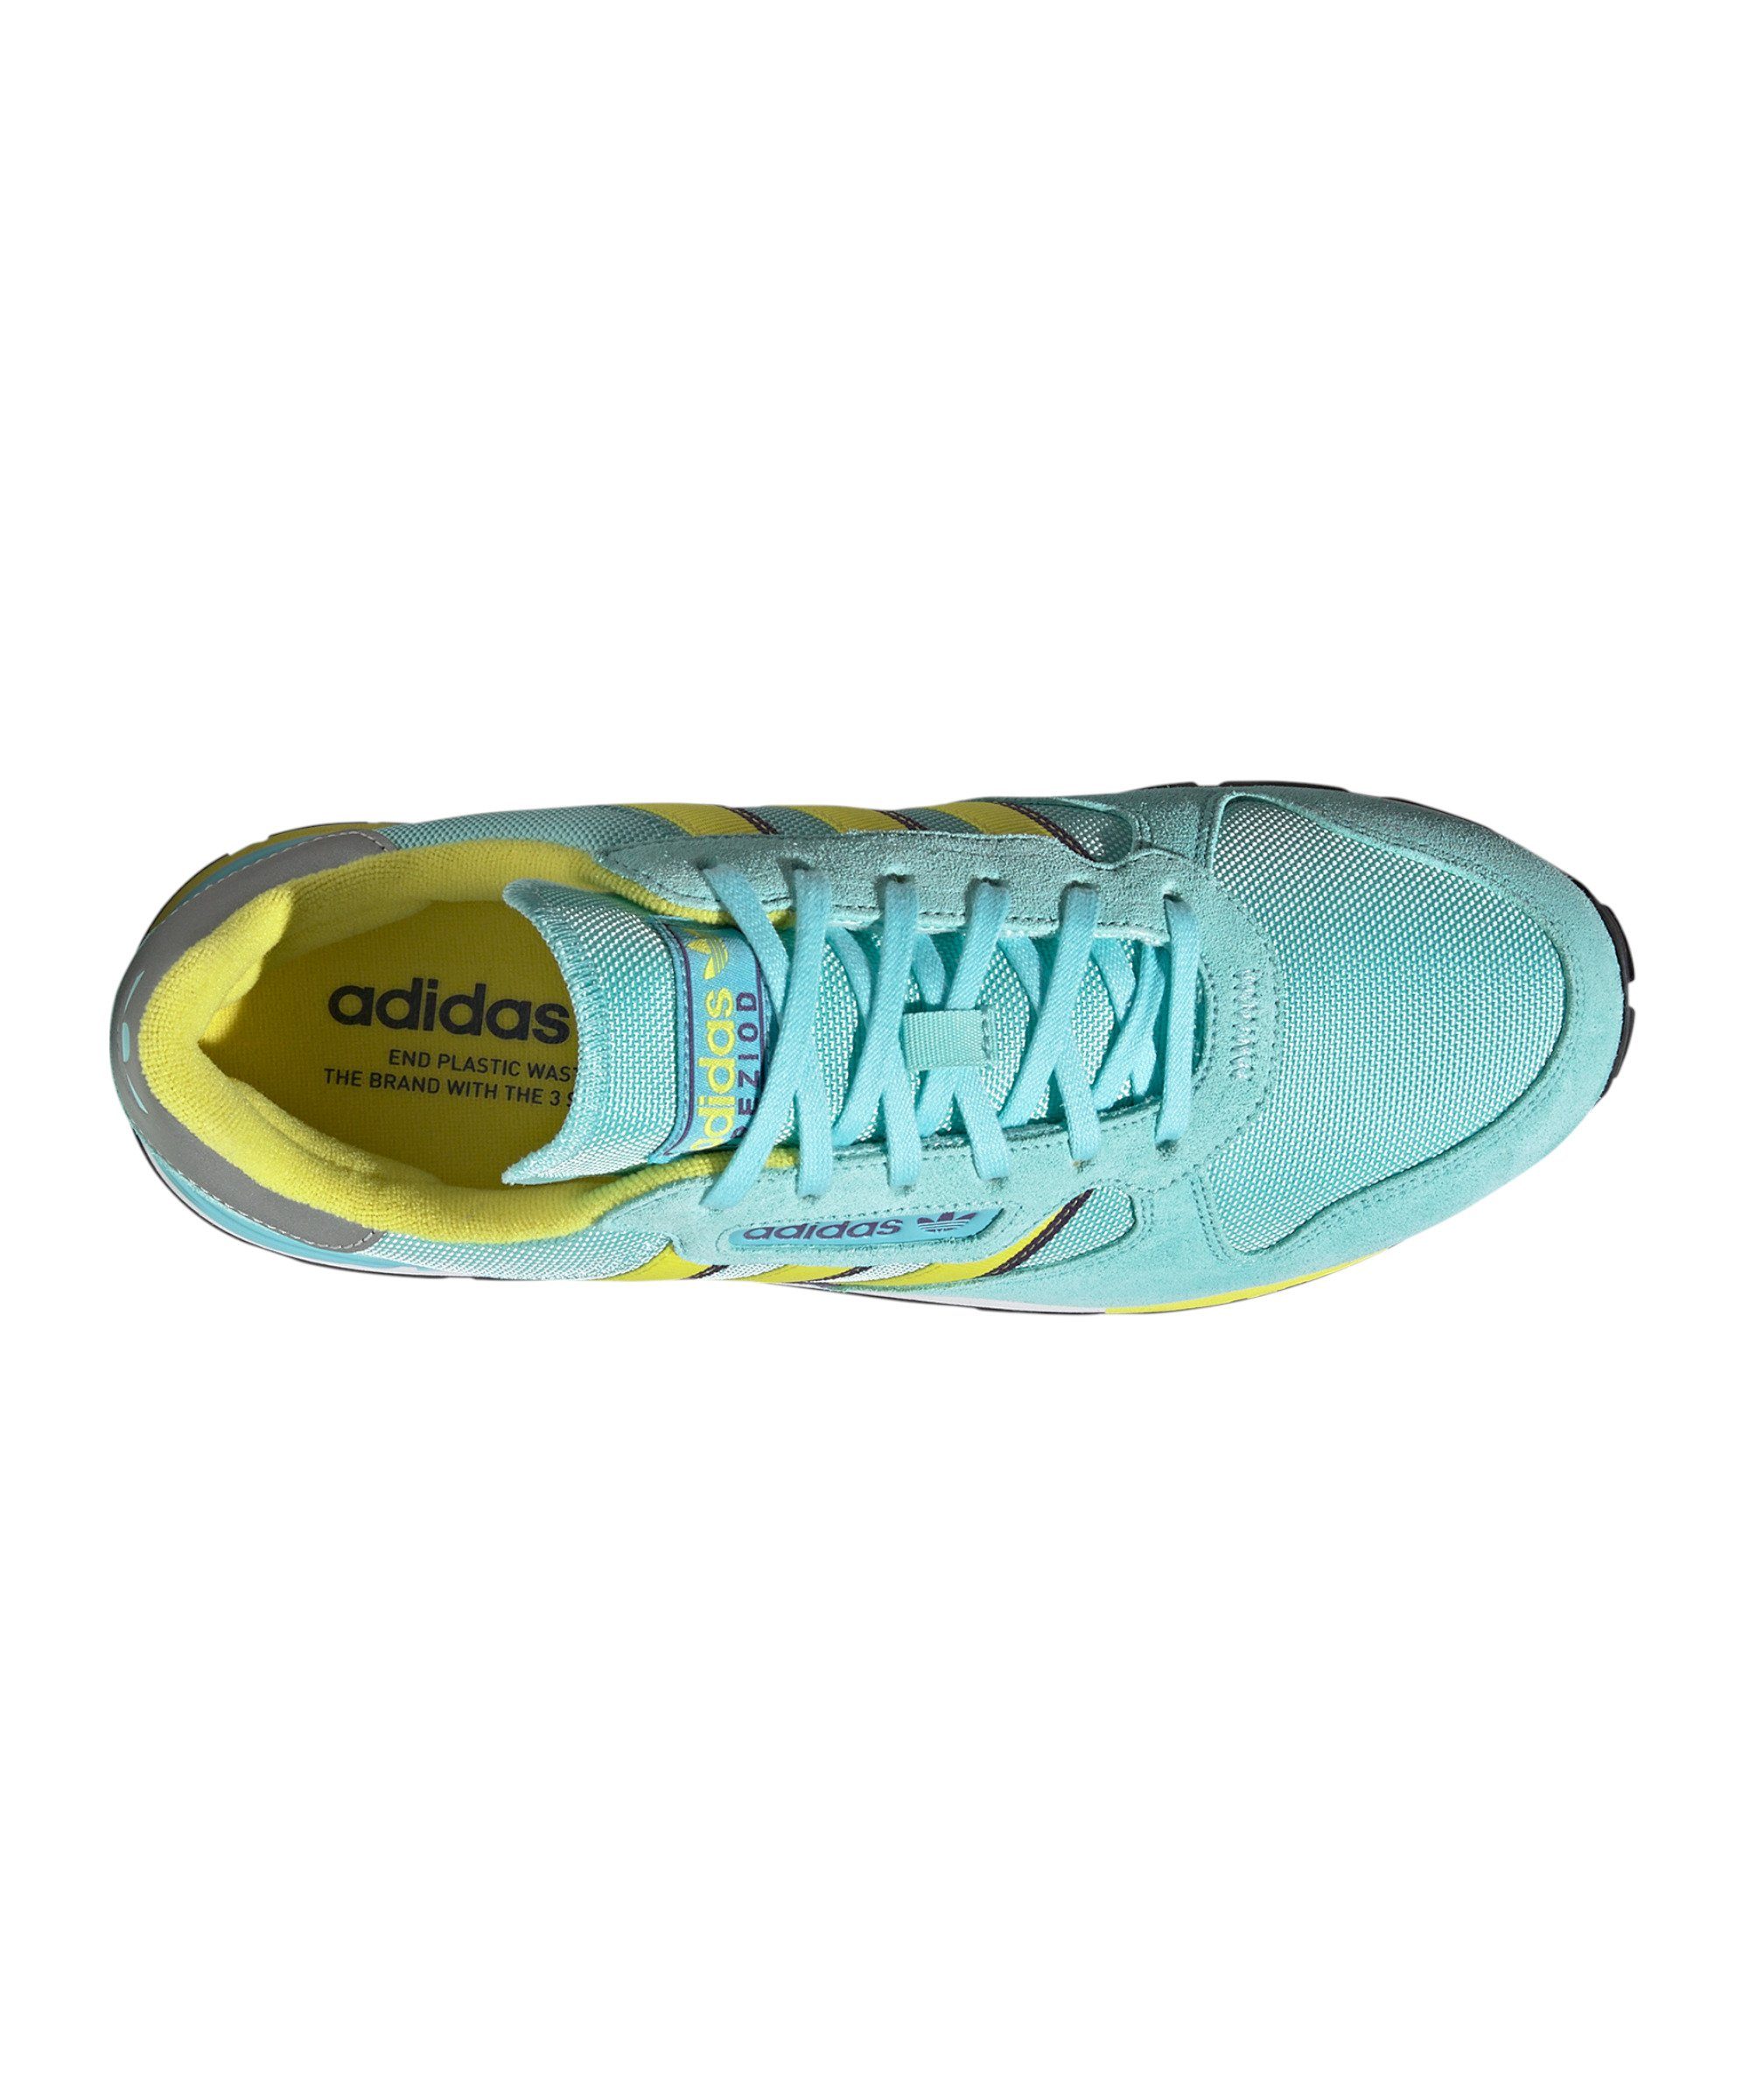 adidas Originals Treziod 2 blaugelblila Sneaker